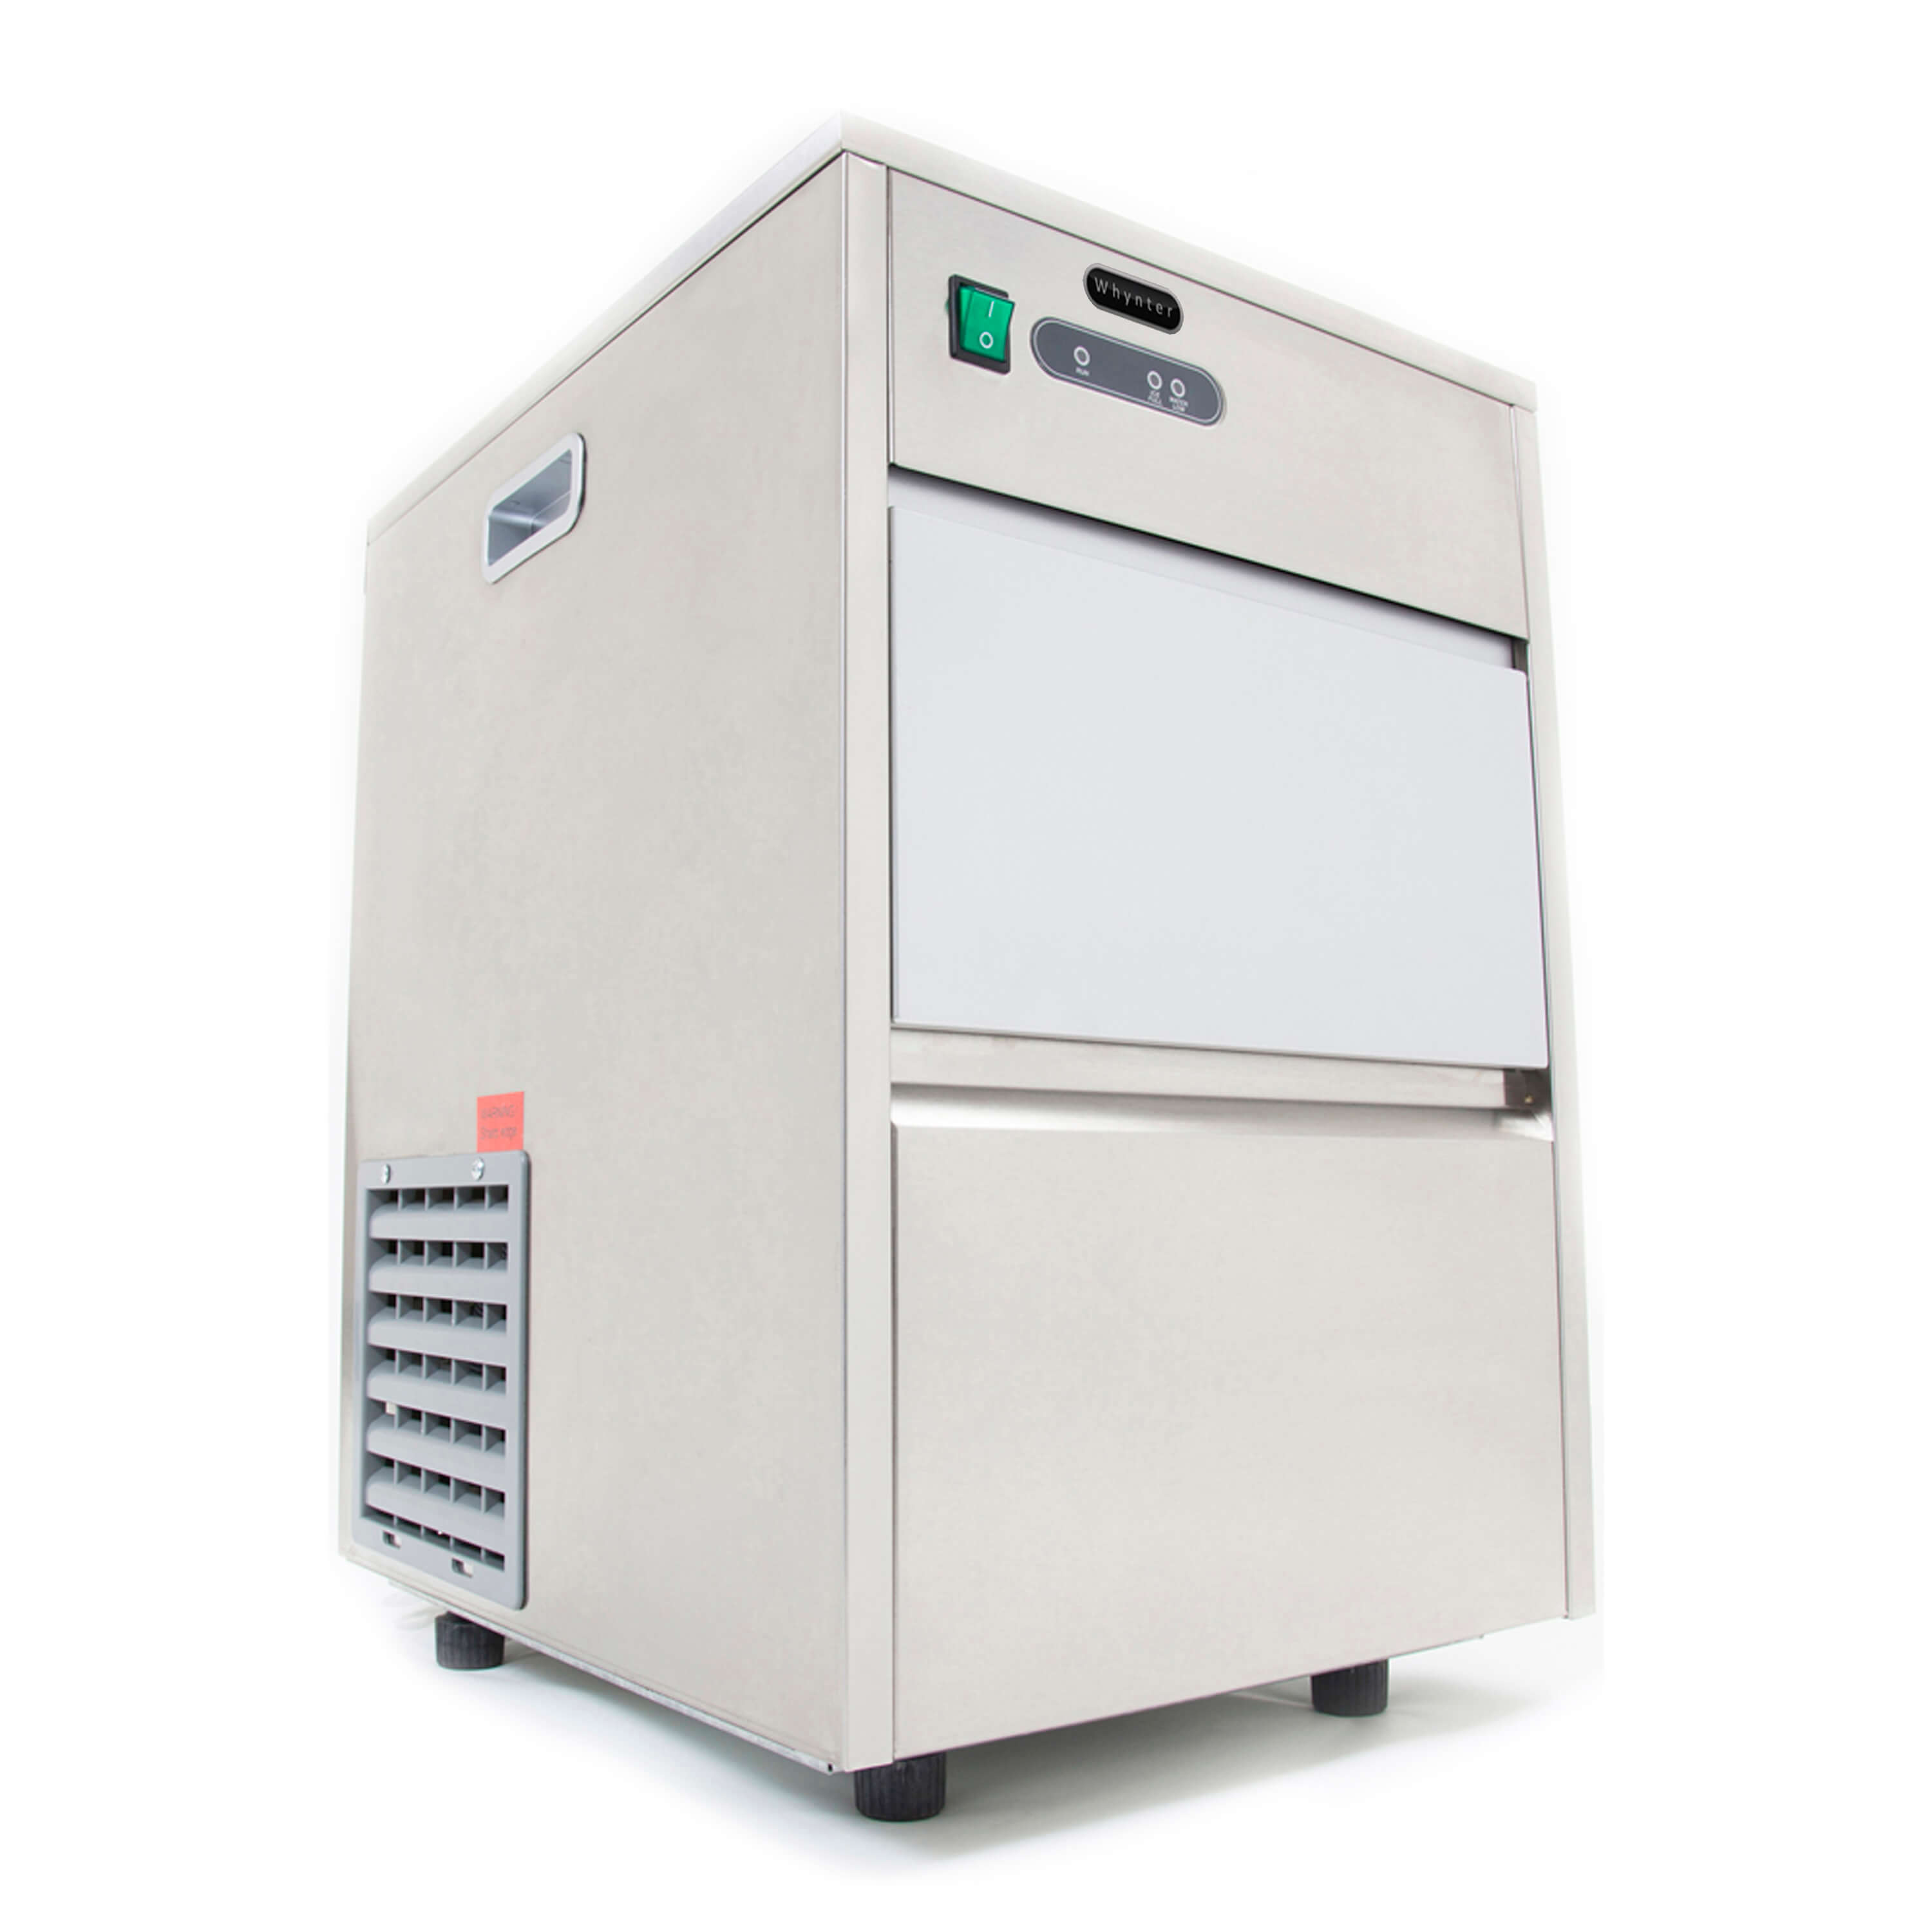 Whynter - Freestanding Ice Maker - 44lb capacity  | FIM-450HS